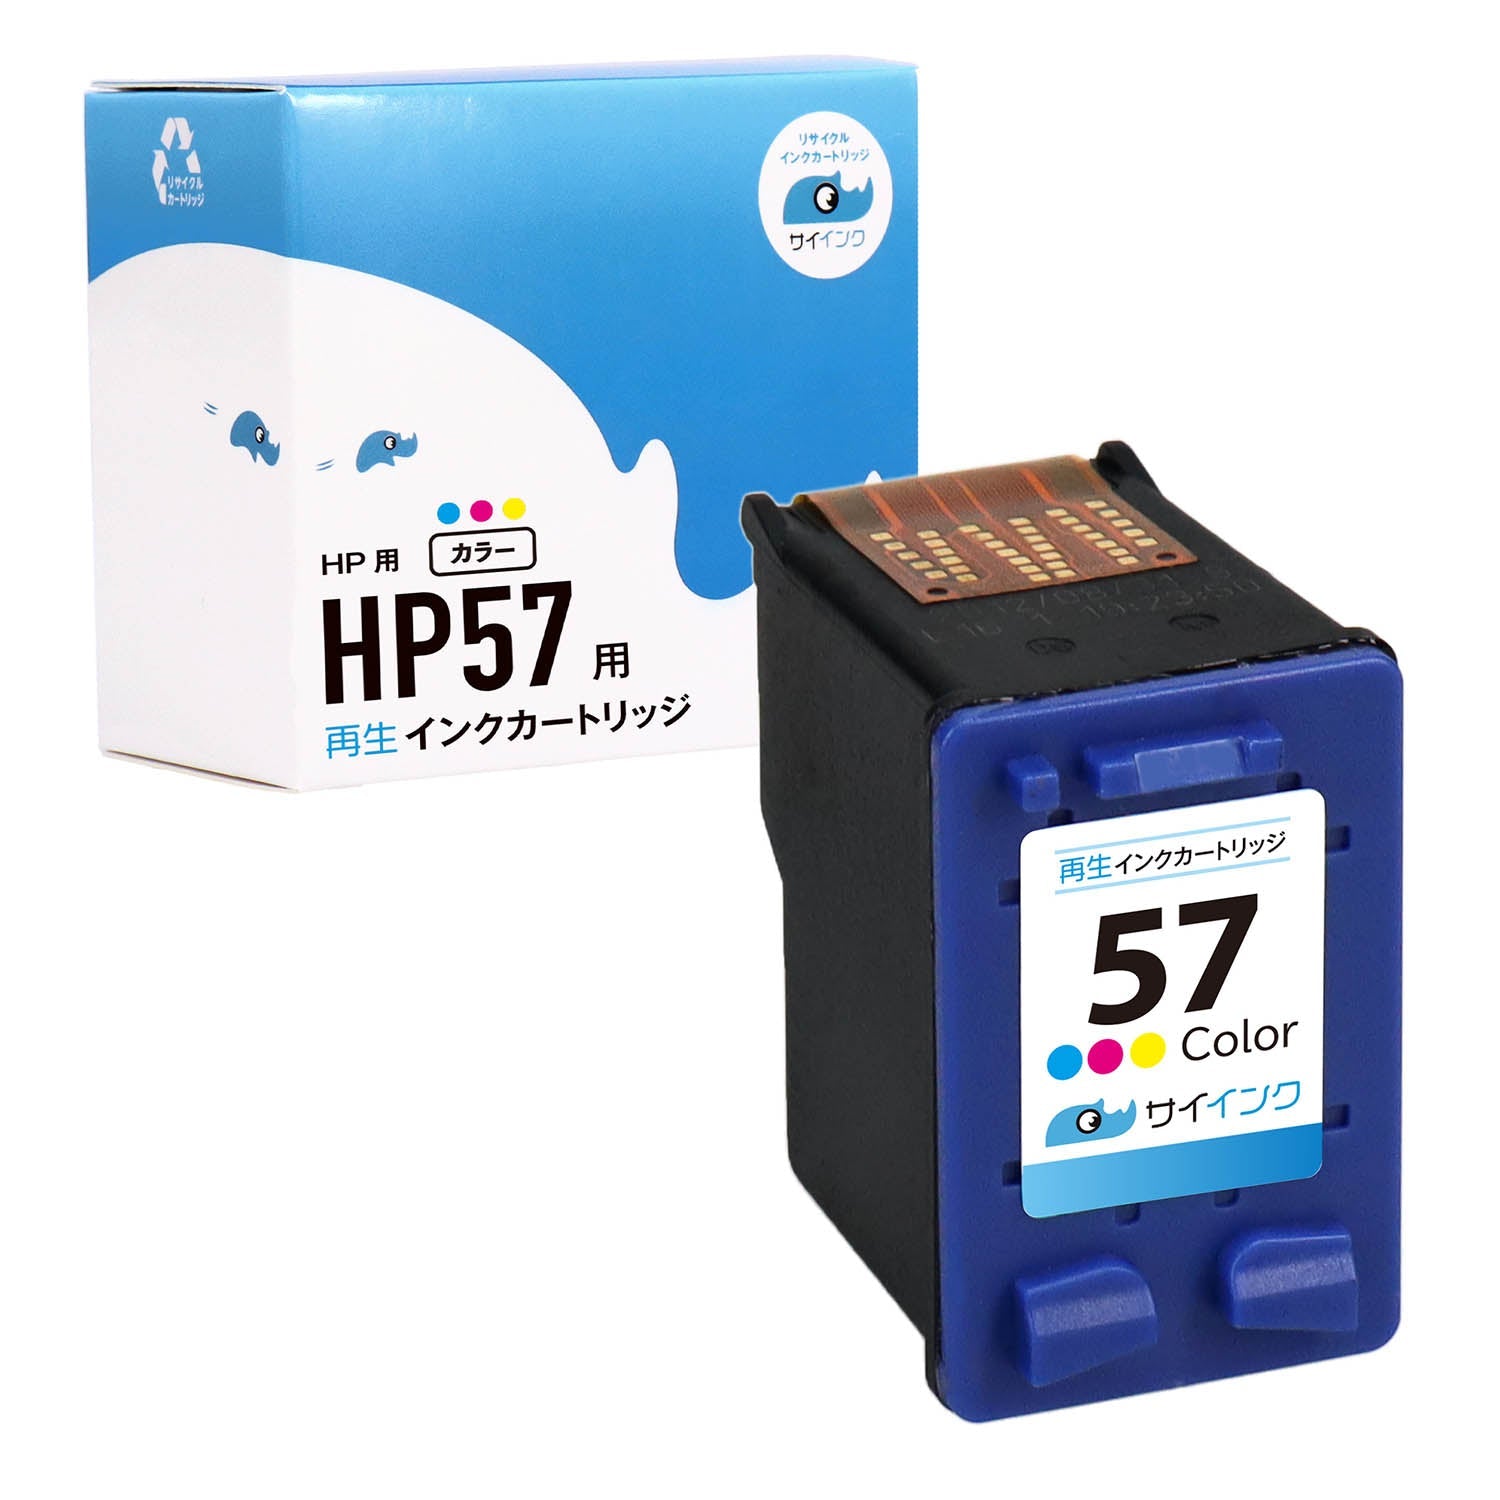 HP用 HP 57 リサイクルインク カラー ラージサイズ